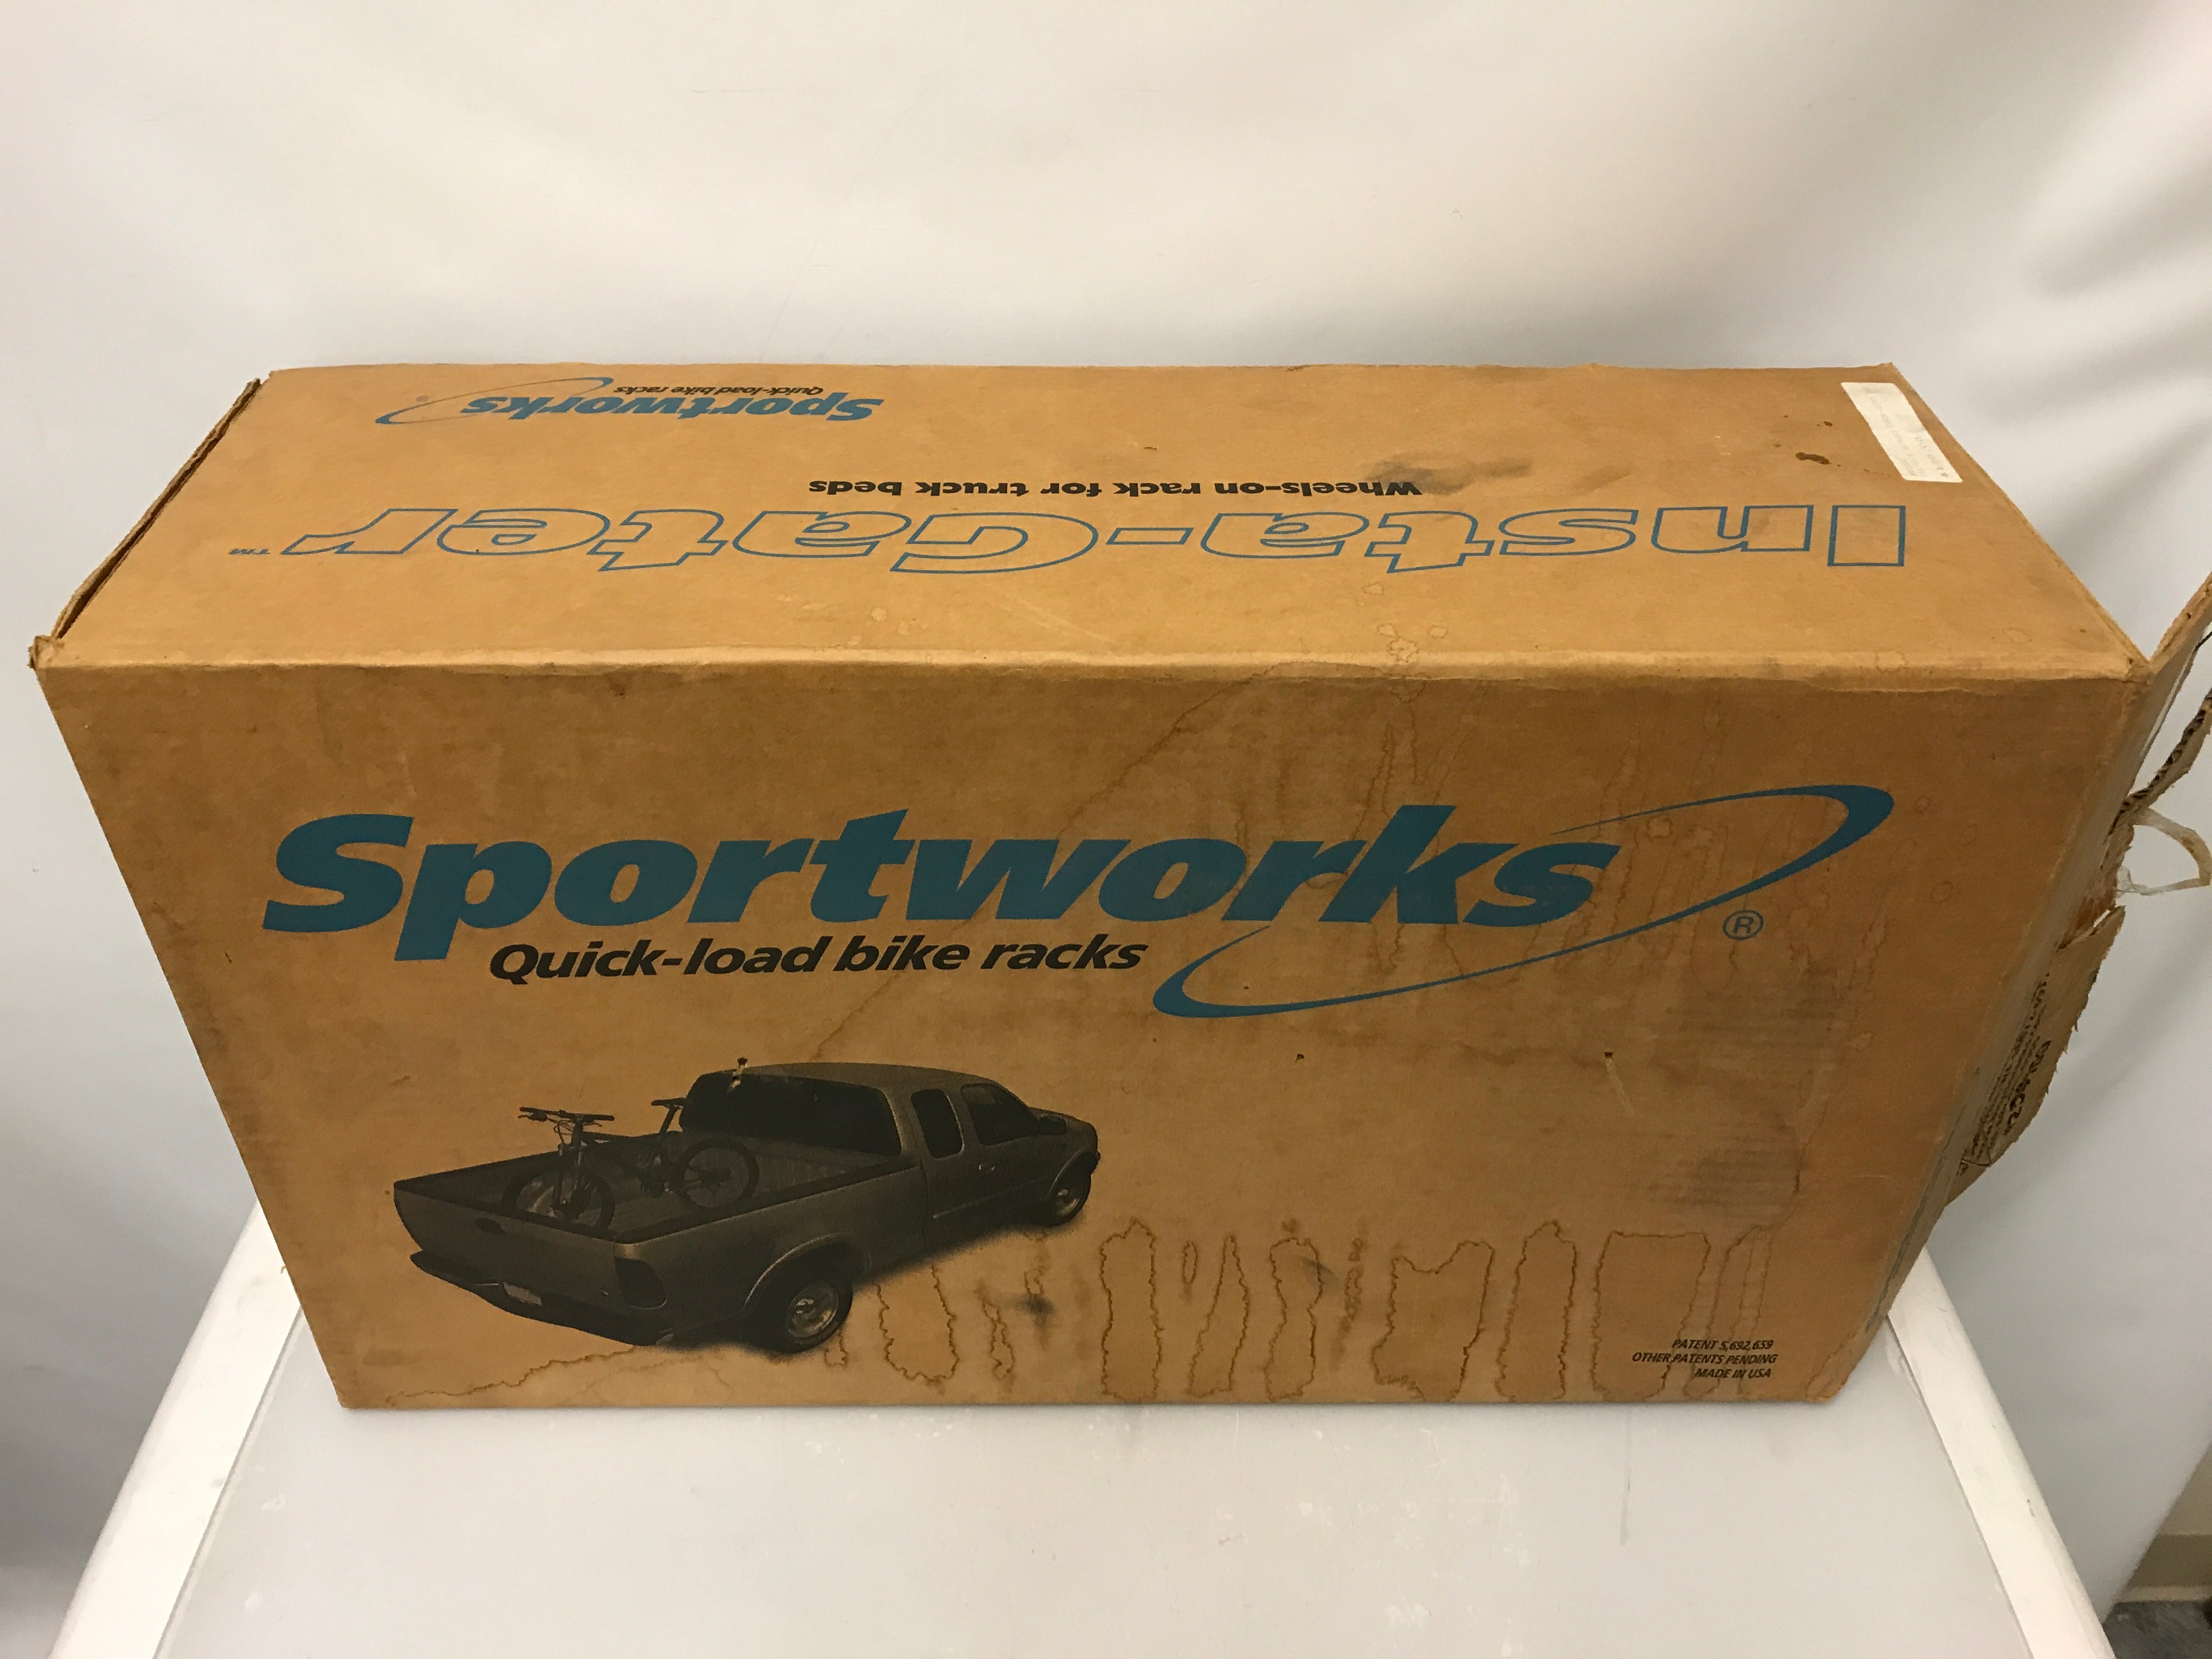 Sportworks Insta-Gater Truck Bed Rack 254100